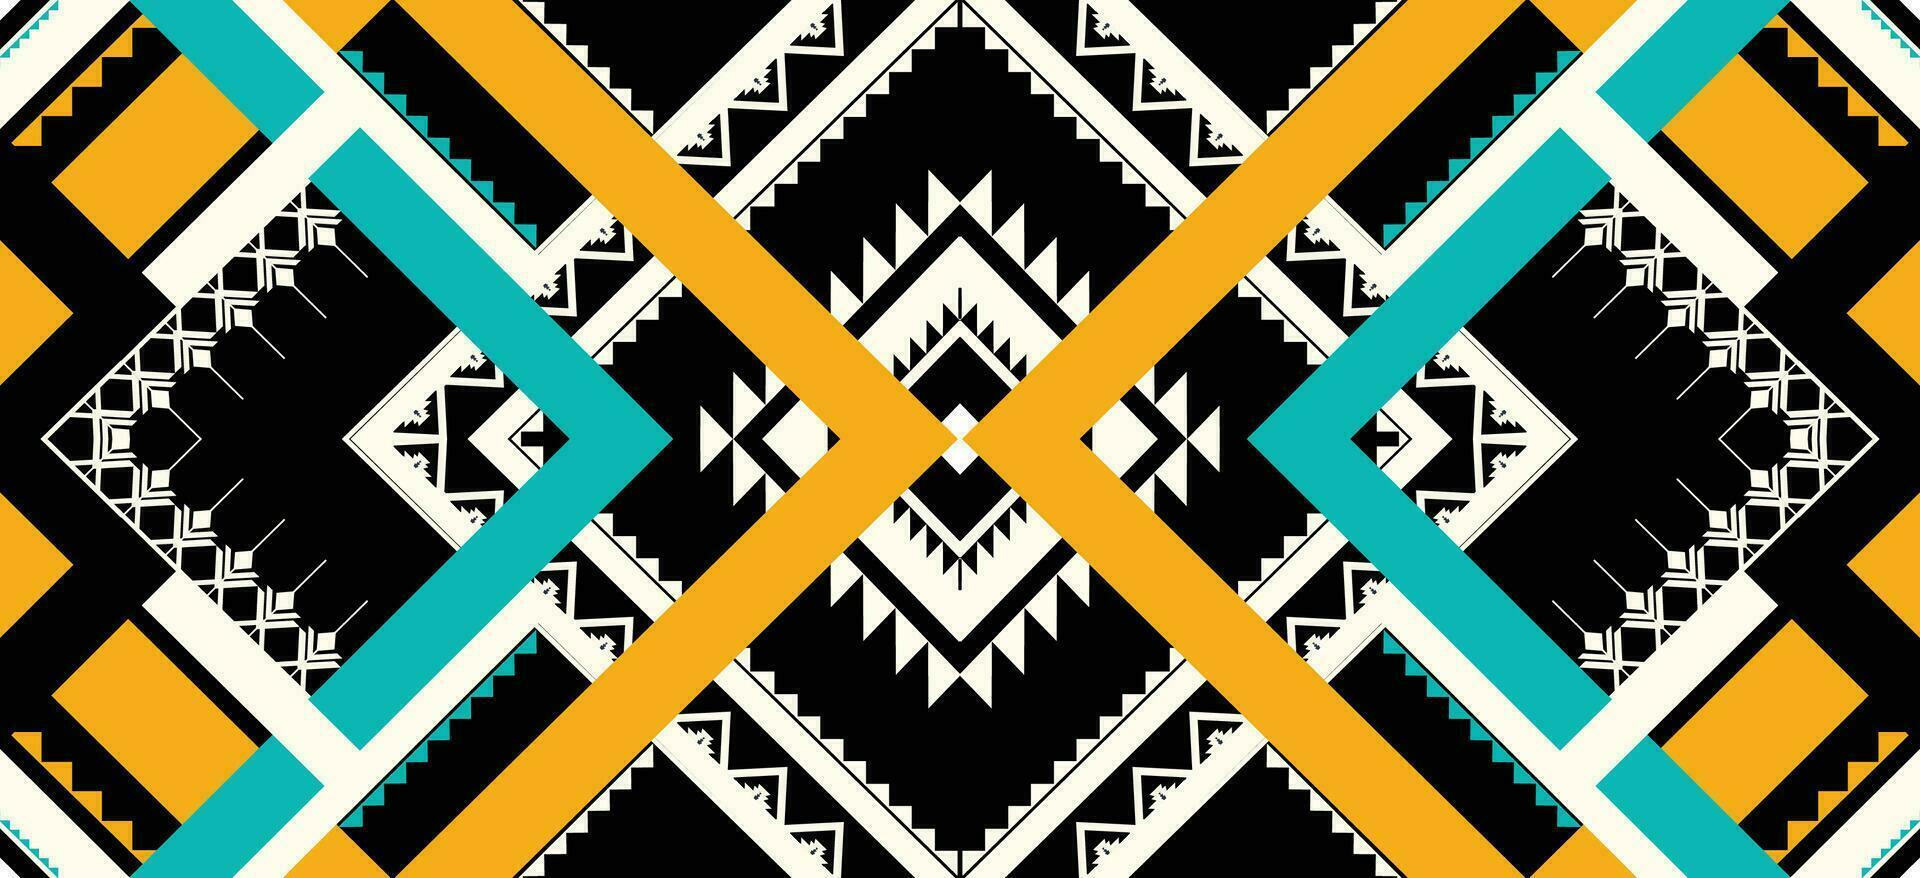 geometrico etnico modello. navajo, occidentale, americano, africano, azteco motivo,flora a strisce . design per moda, carta da parati, vestiario, avvolgimento, batik, tessuto, piastrelle, casa detrattore e stampe. vettore illustrazione